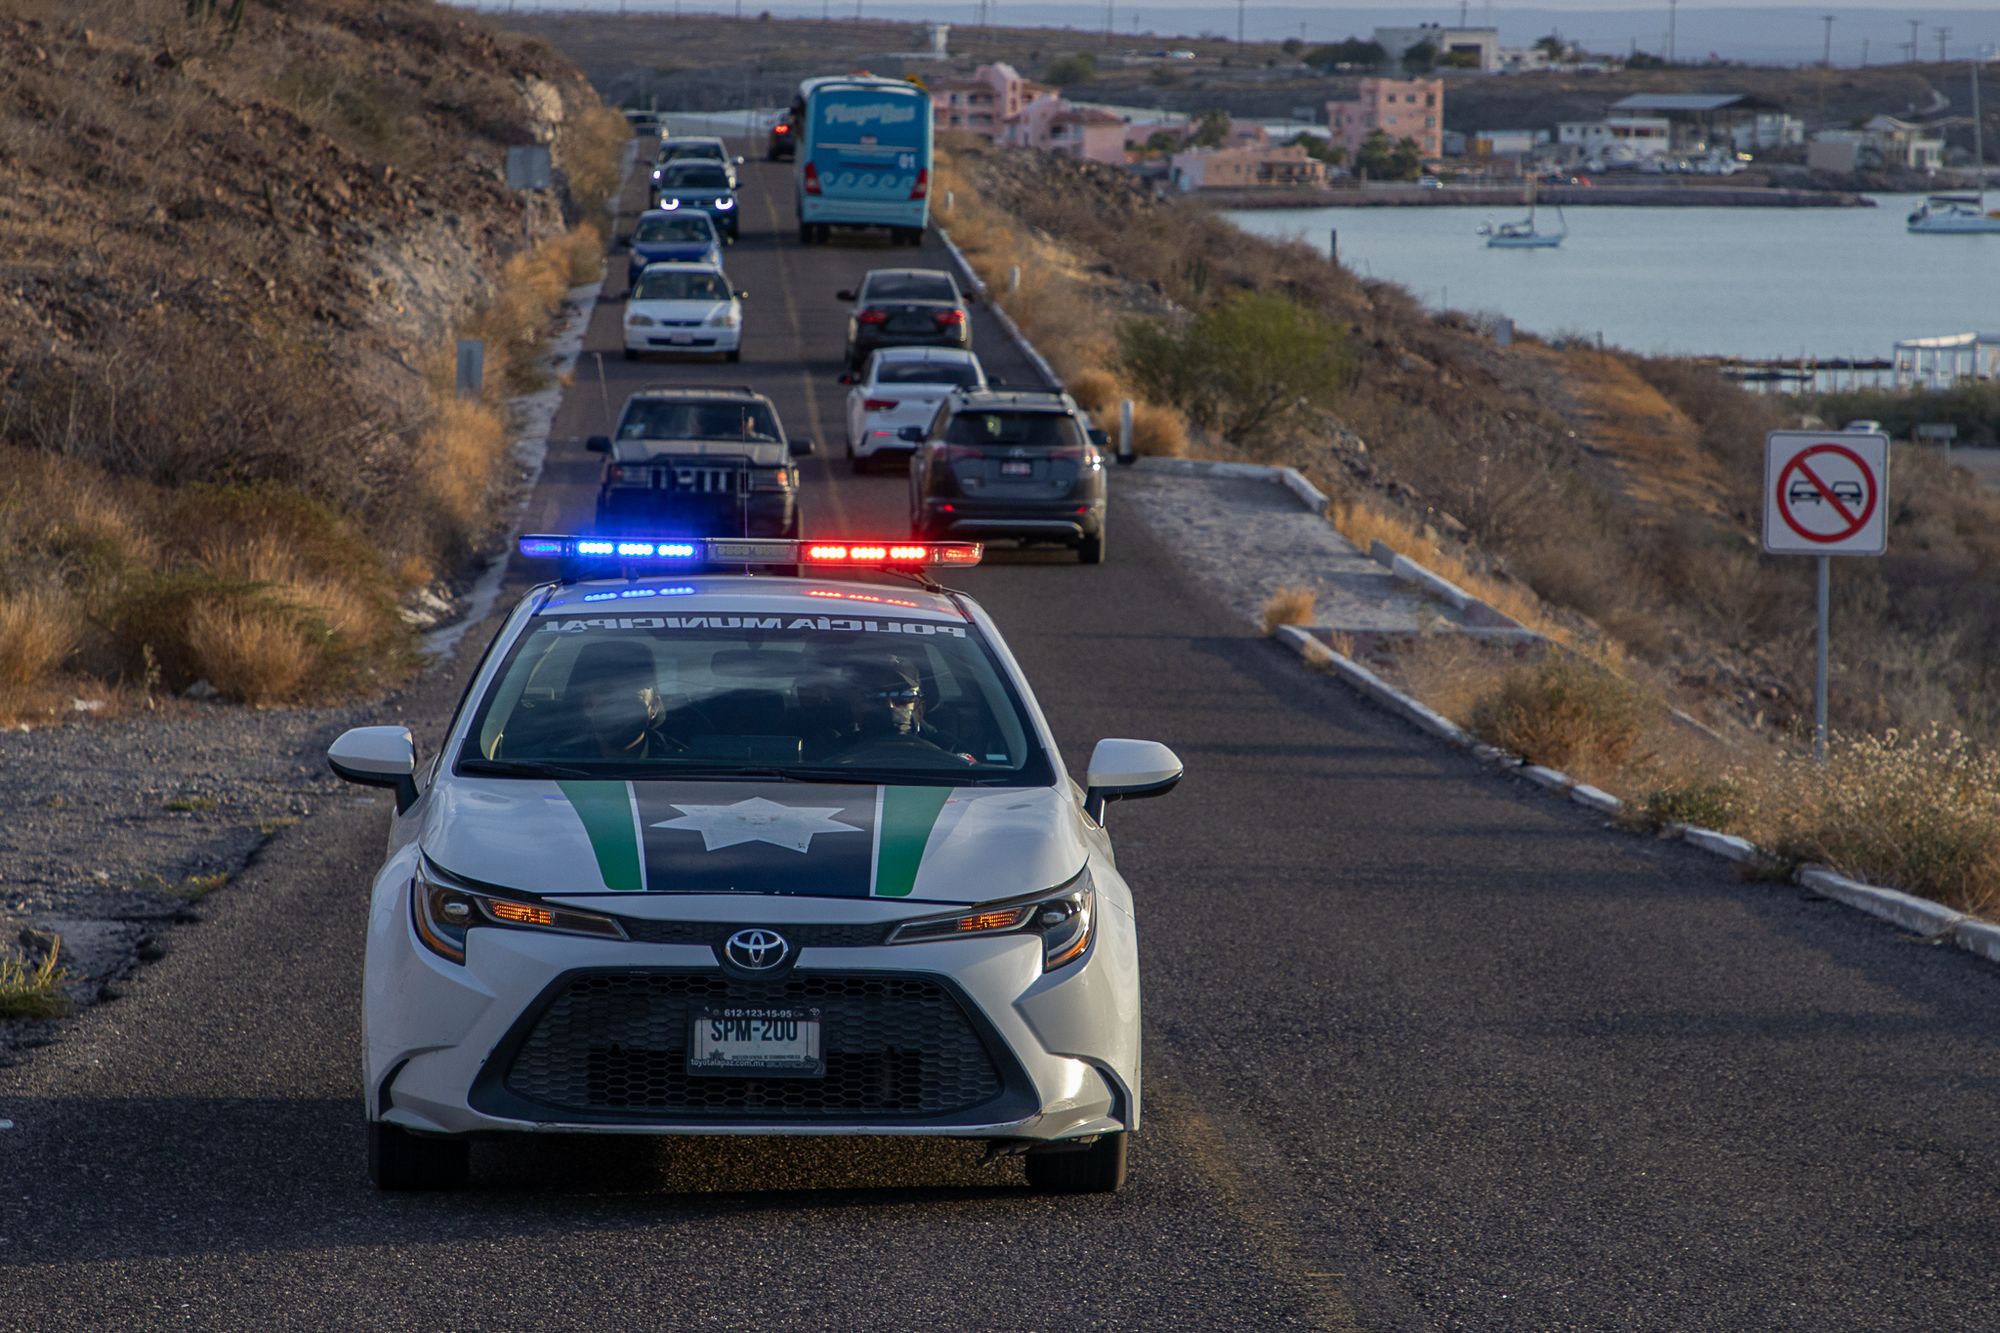 La Policía Municipal de La Paz emite recomendaciones durante este próximo periodo de vacaciones